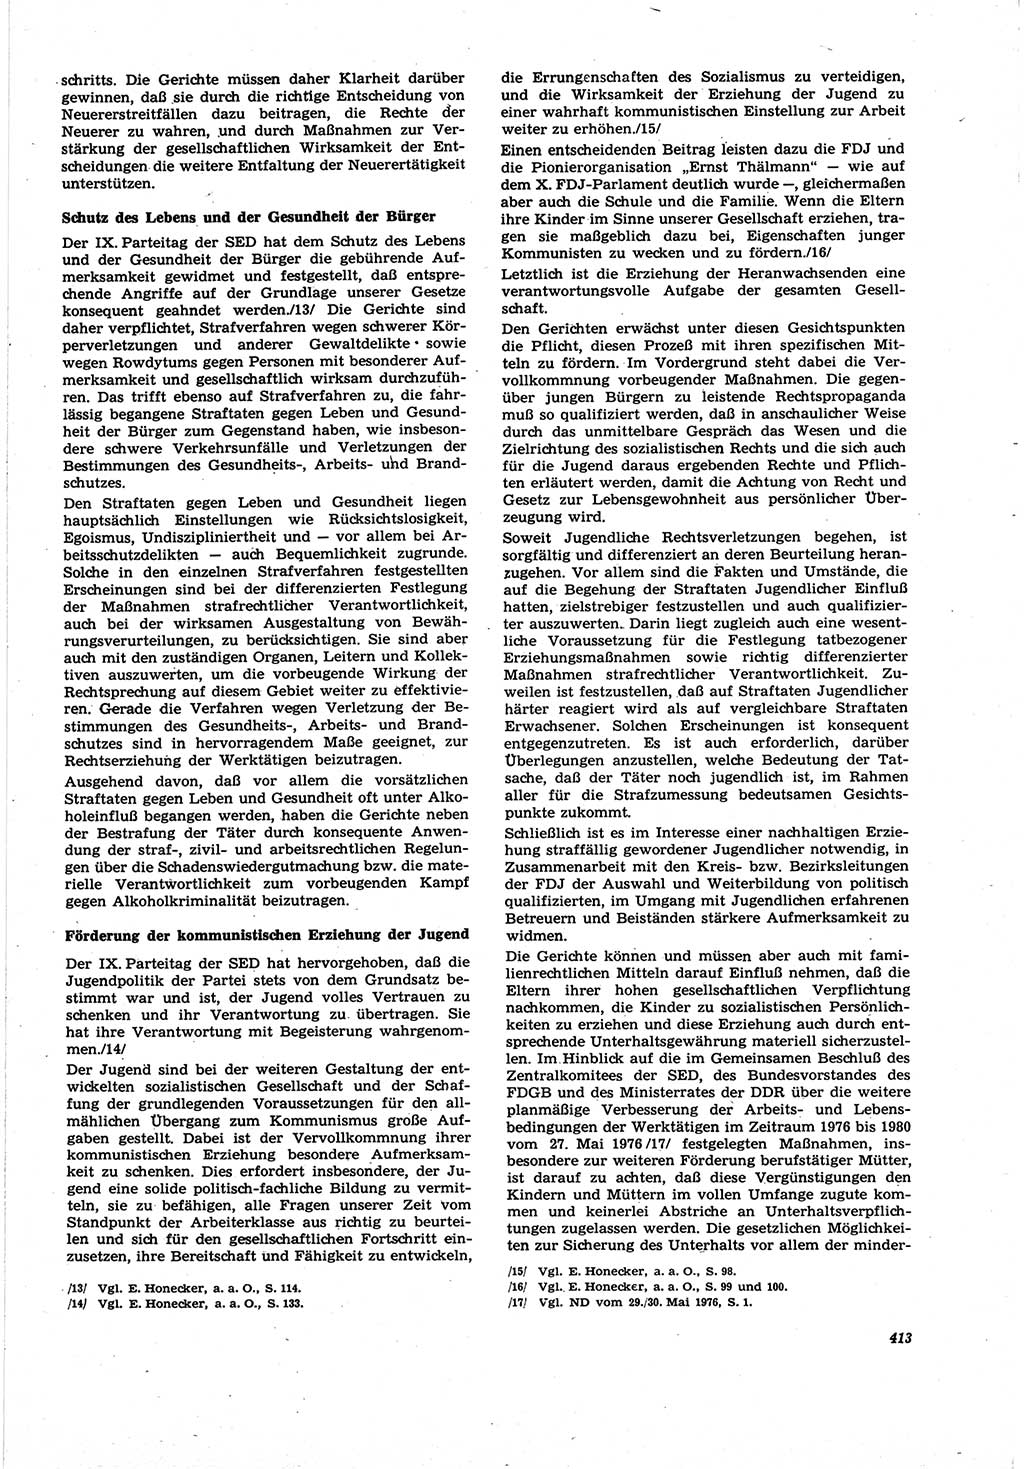 Neue Justiz (NJ), Zeitschrift für Recht und Rechtswissenschaft [Deutsche Demokratische Republik (DDR)], 30. Jahrgang 1976, Seite 413 (NJ DDR 1976, S. 413)